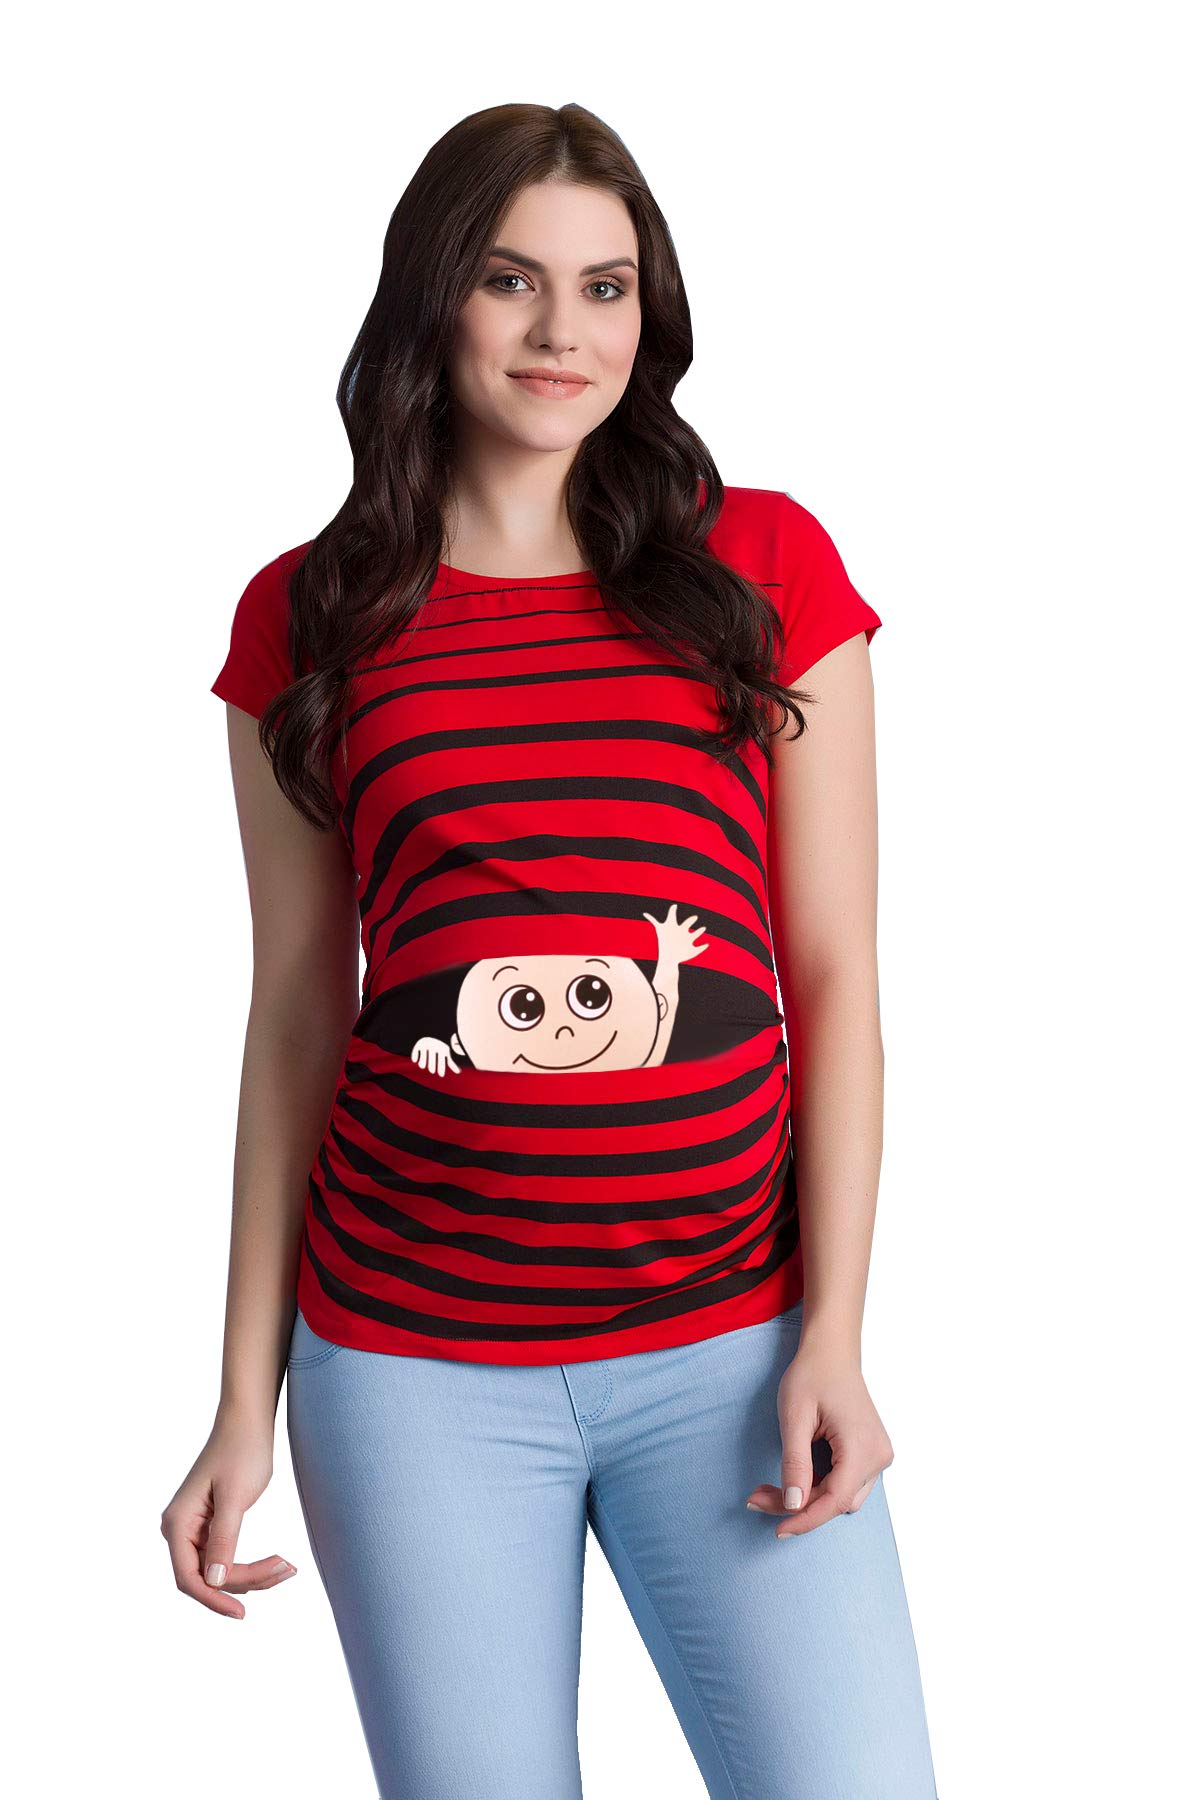 Winke Winke Baby - Lustige witzige süße Umstandsmode gestreiftes Umstandsshirt mit Motiv für die Schwangerschaft Schwangerschaftsshirt, Kurzarm (Rot, Small)